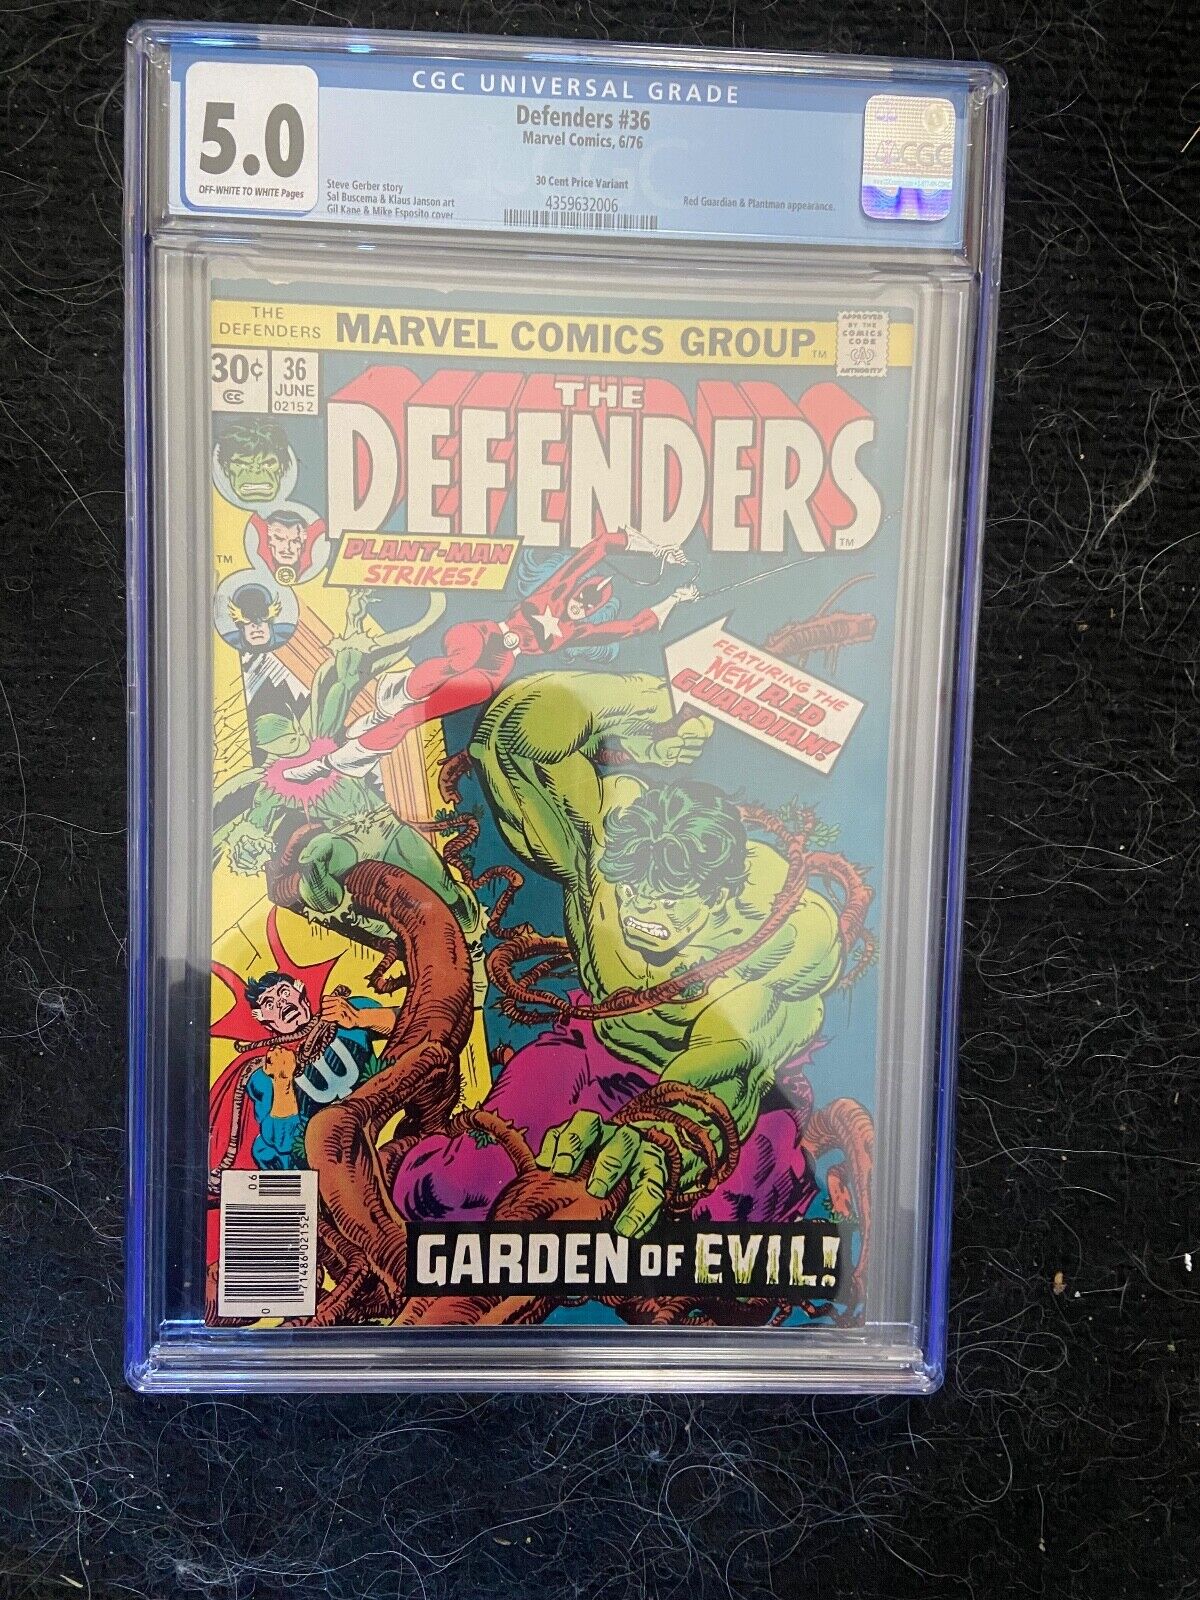 Defenders #36, CGC 5.0 VG/FN, 30 Cent Price Variant, Doctor Strange, Nebulon